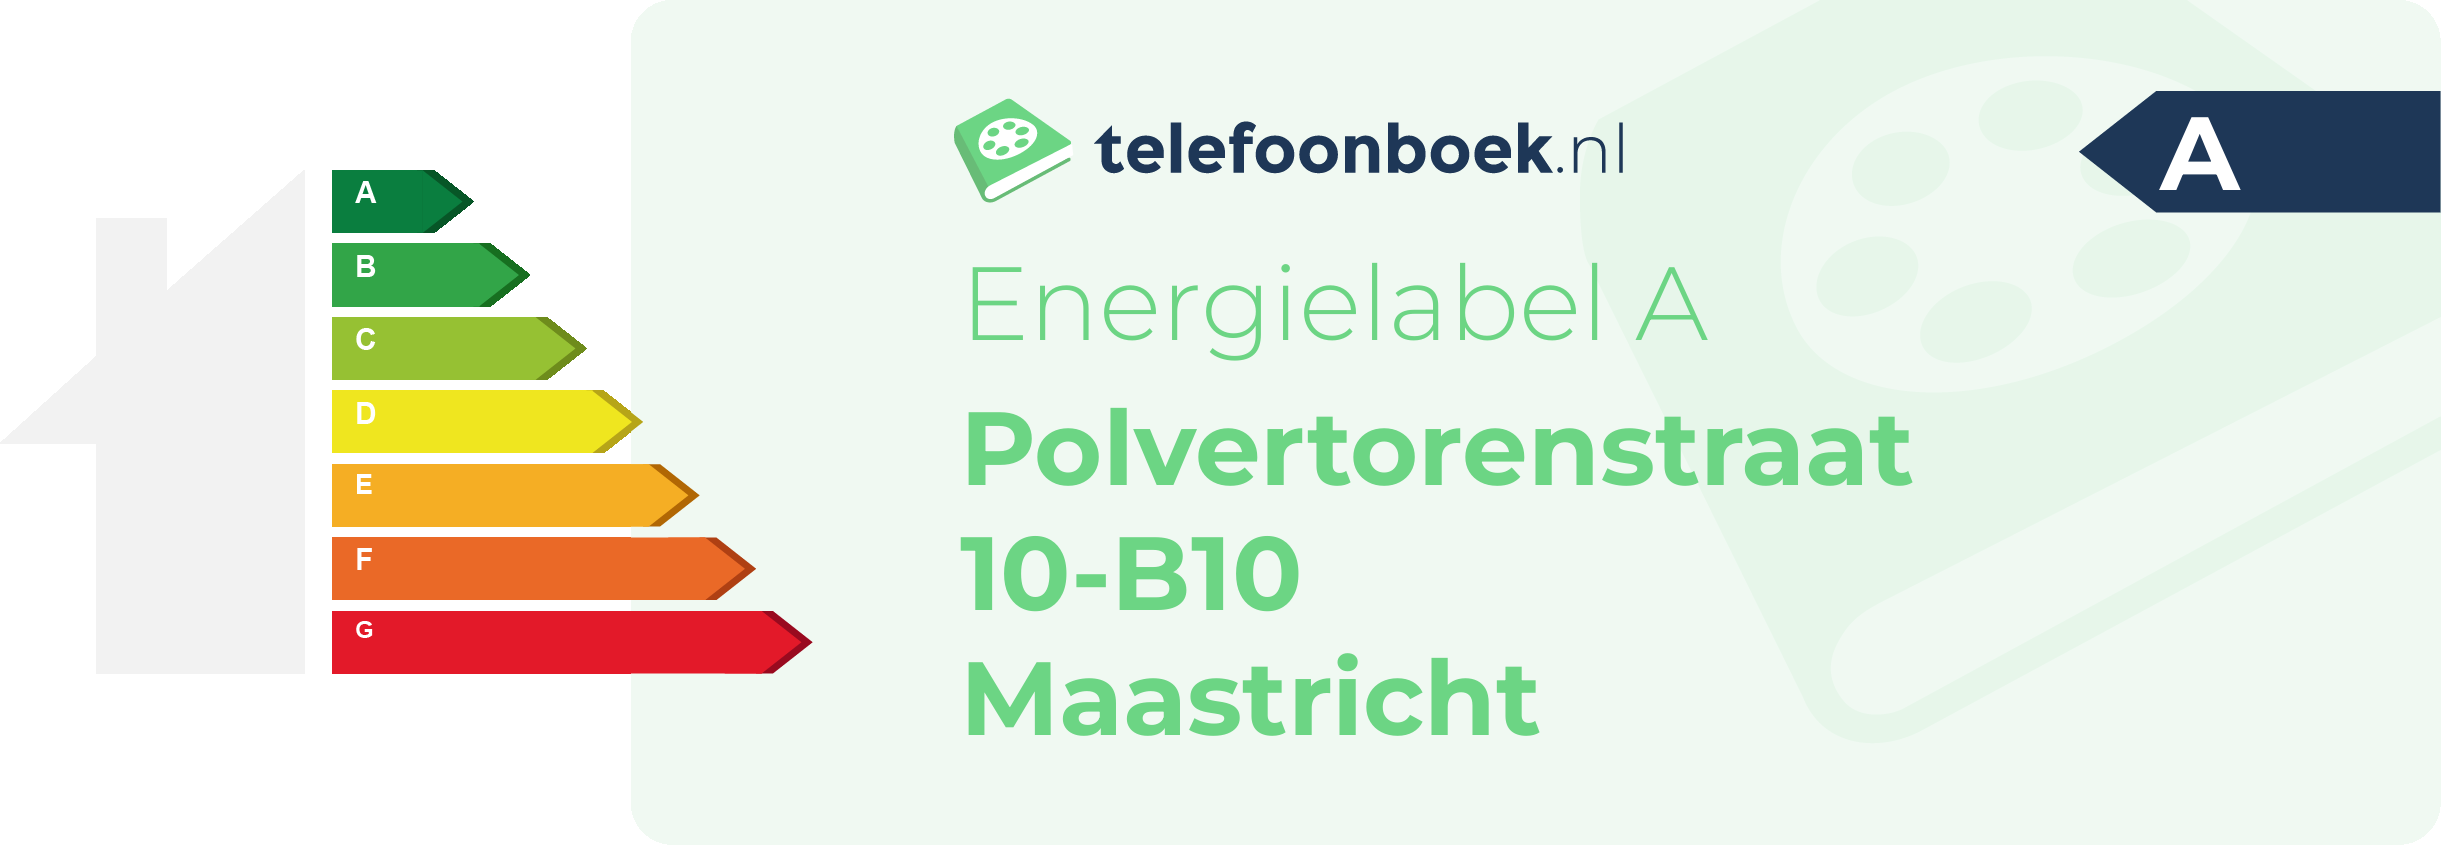 Energielabel Polvertorenstraat 10-B10 Maastricht